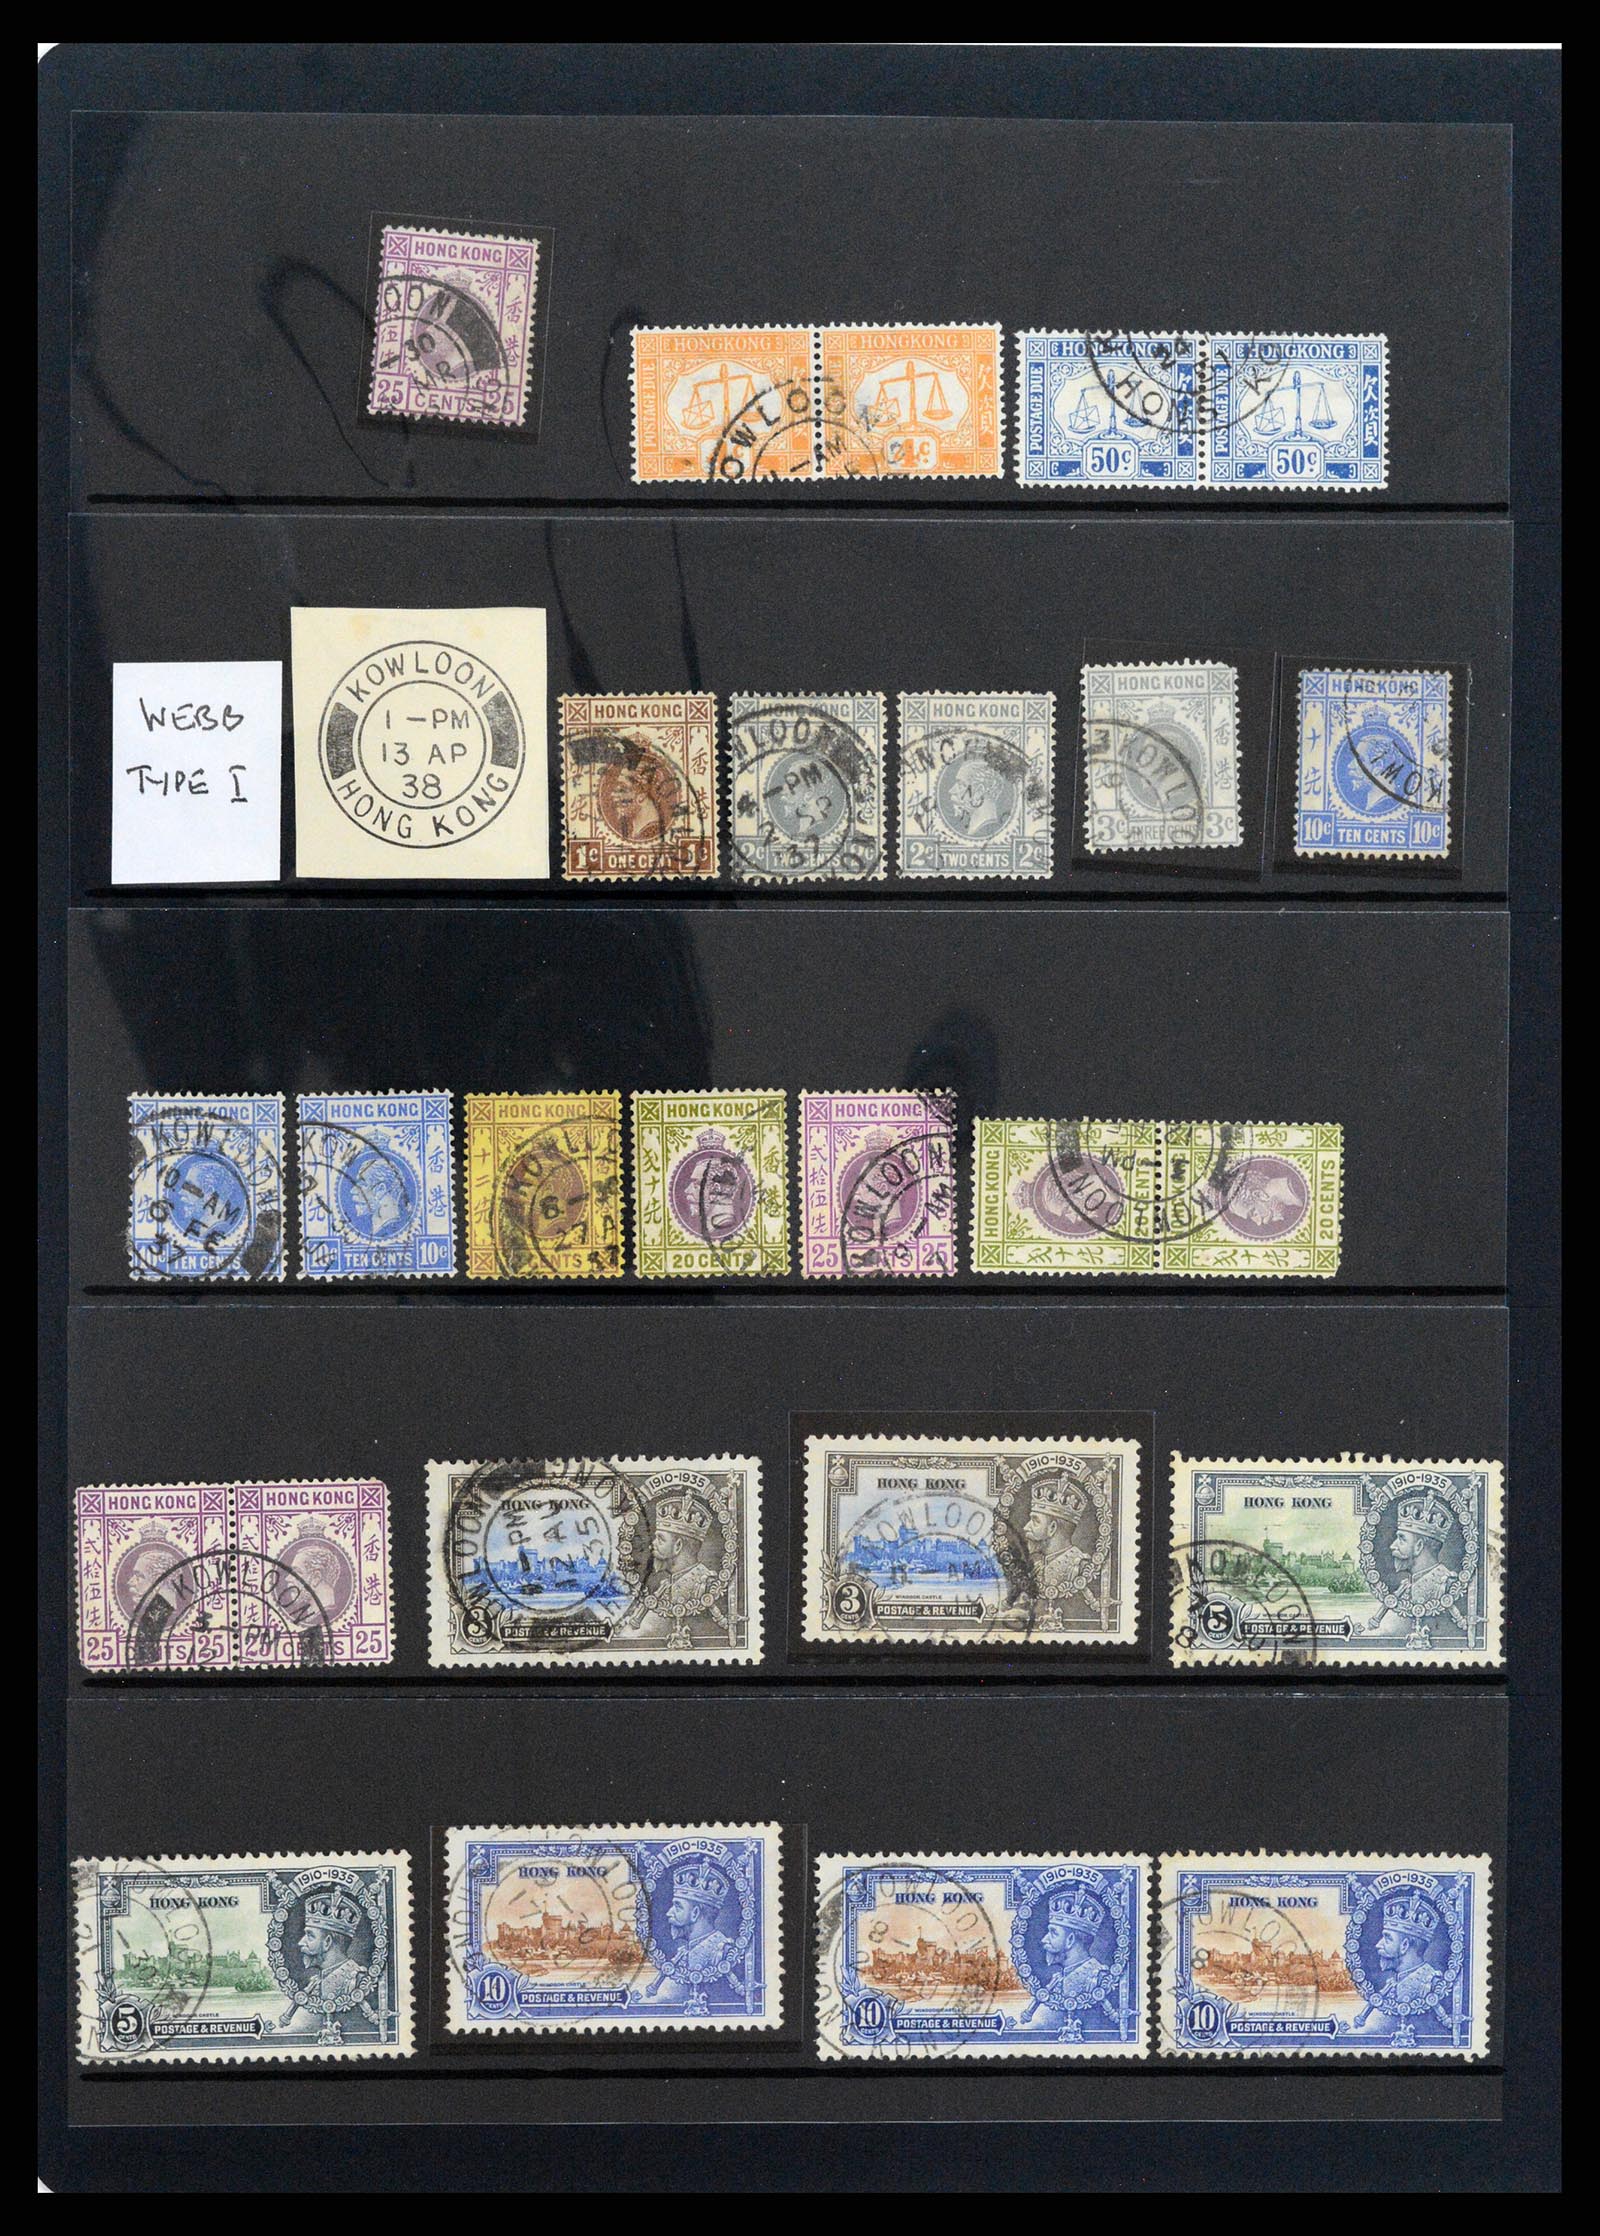 37358 067 - Stamp collection 37358 Hong Kong 1861-1997.